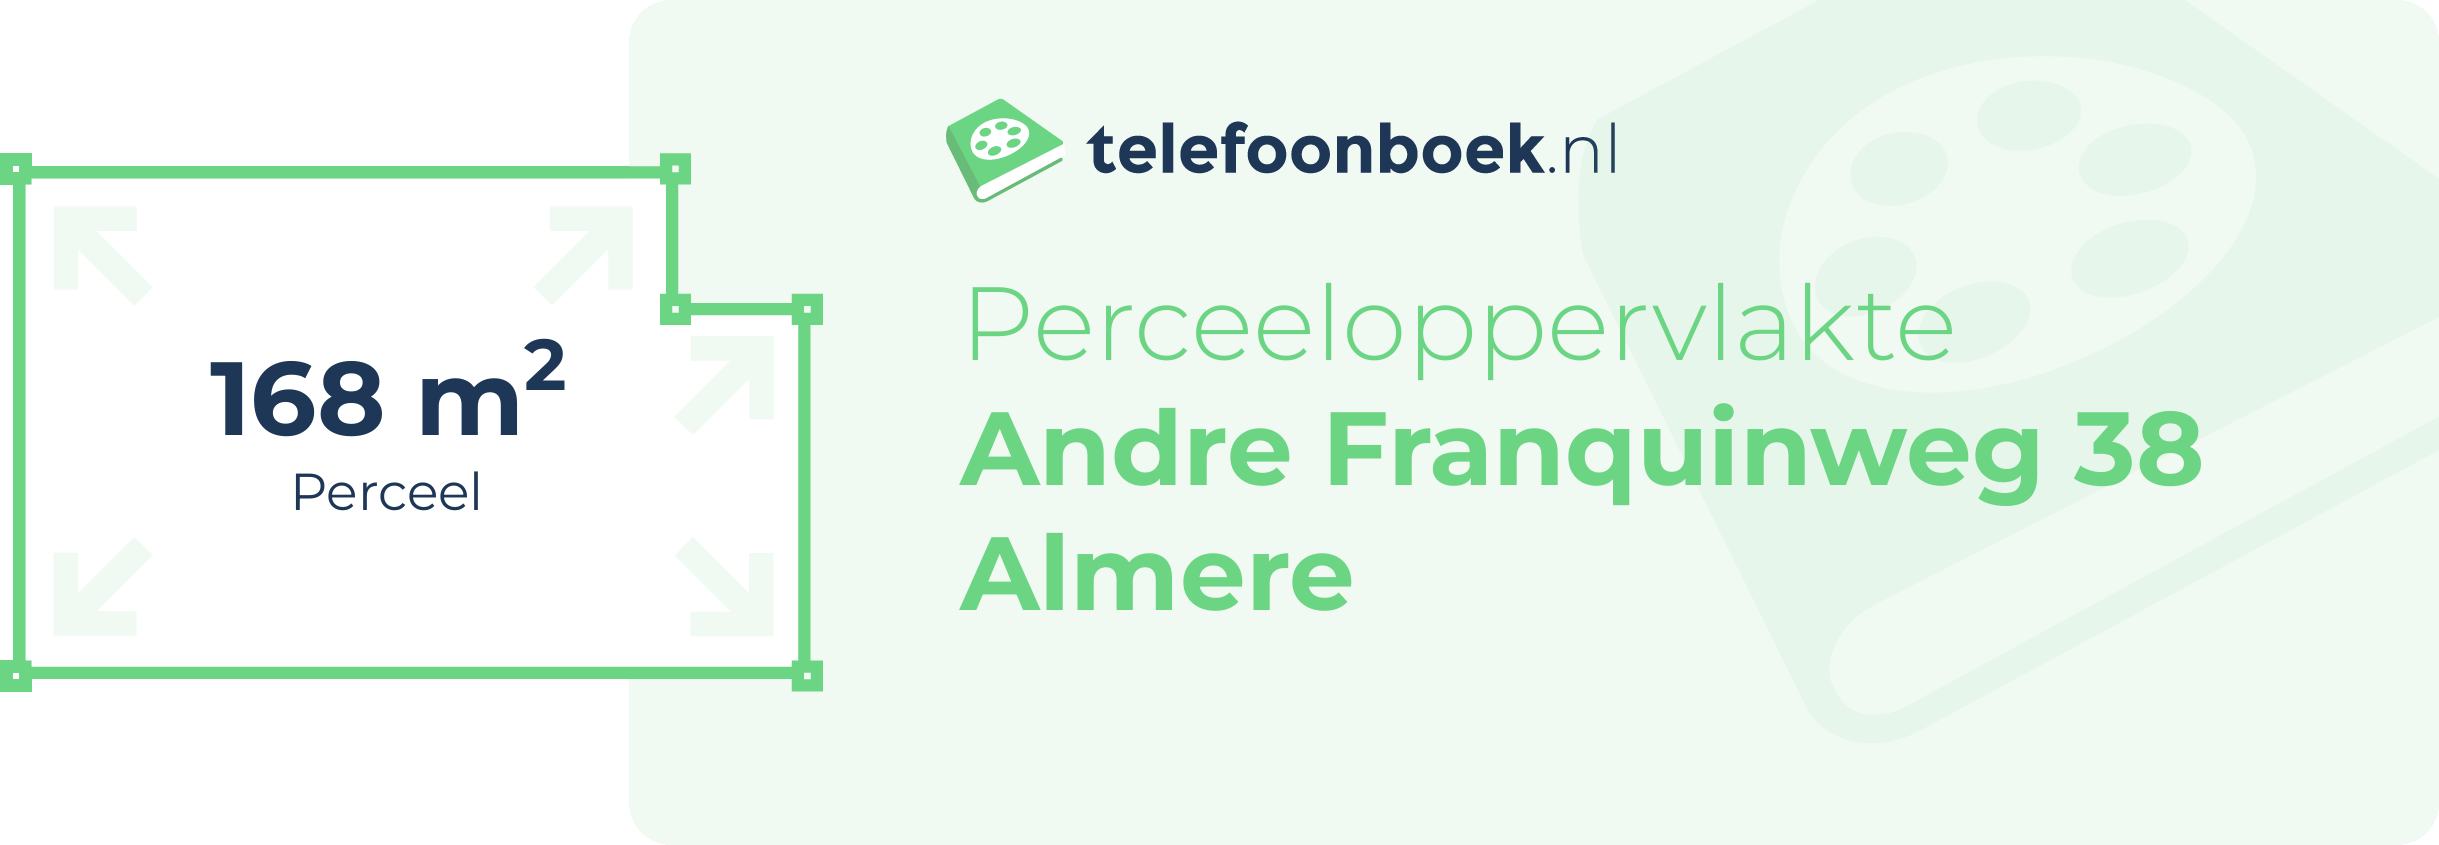 Perceeloppervlakte Andre Franquinweg 38 Almere